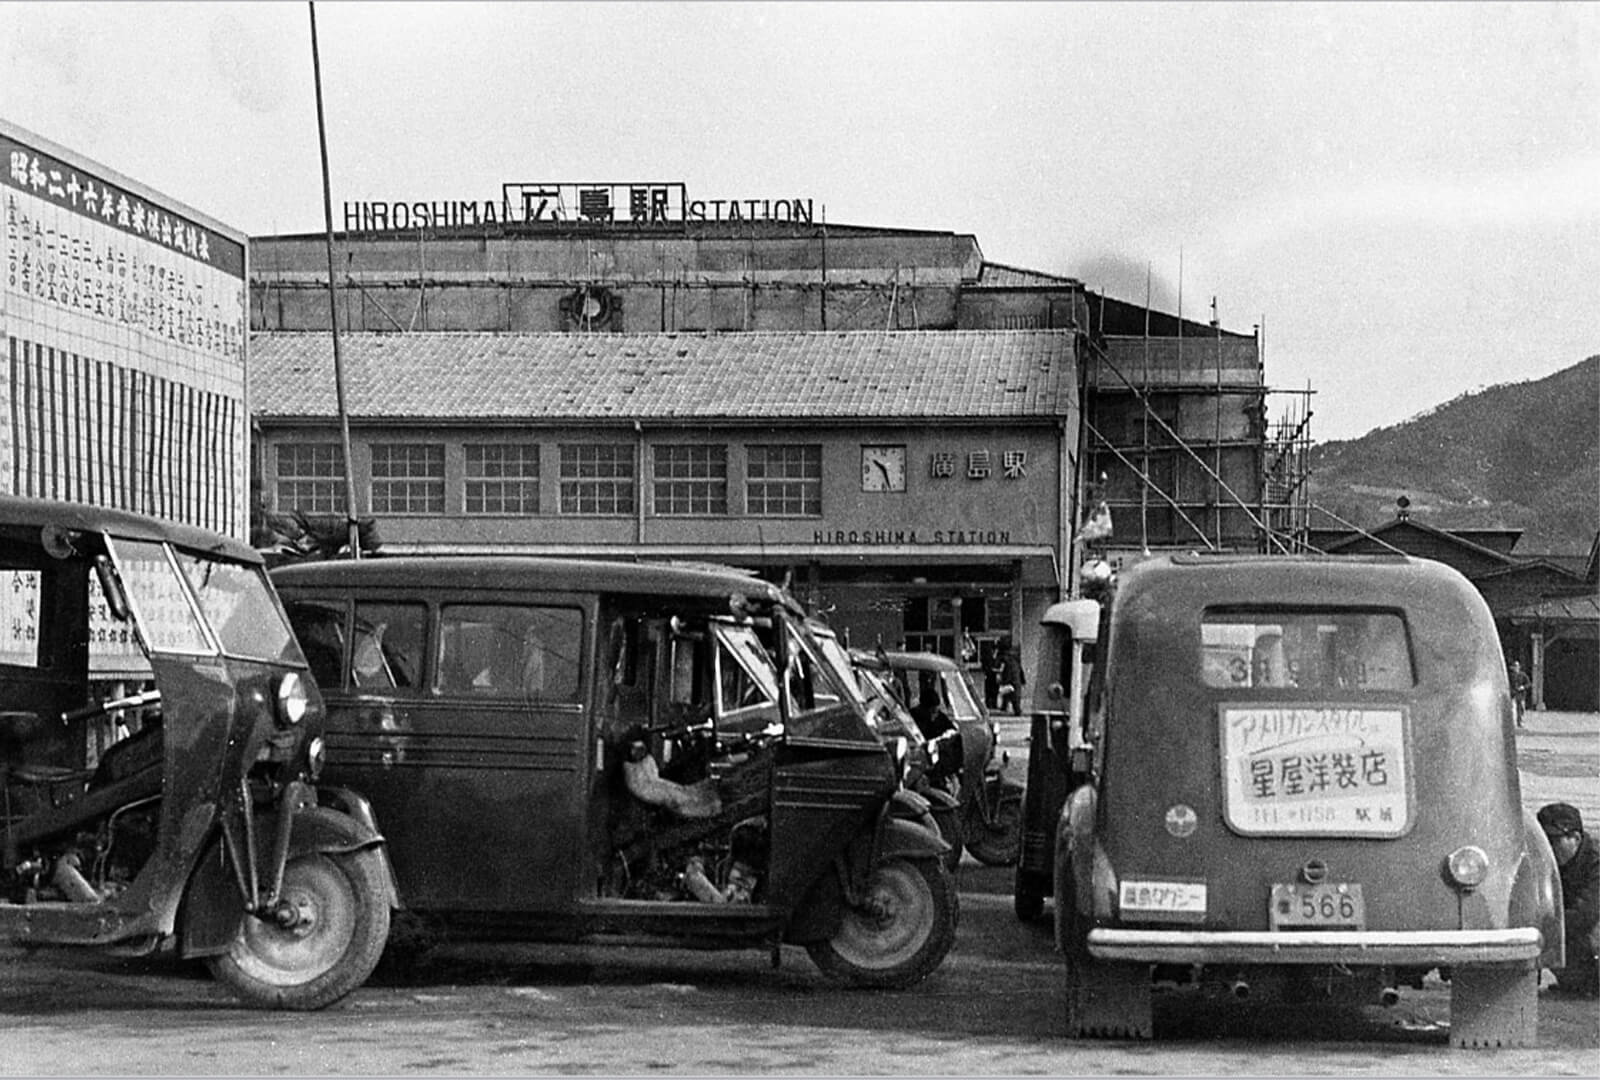 La gare d’Hiroshima, devant laquelle des véhicules sont stationnés. Photo des années 1940.